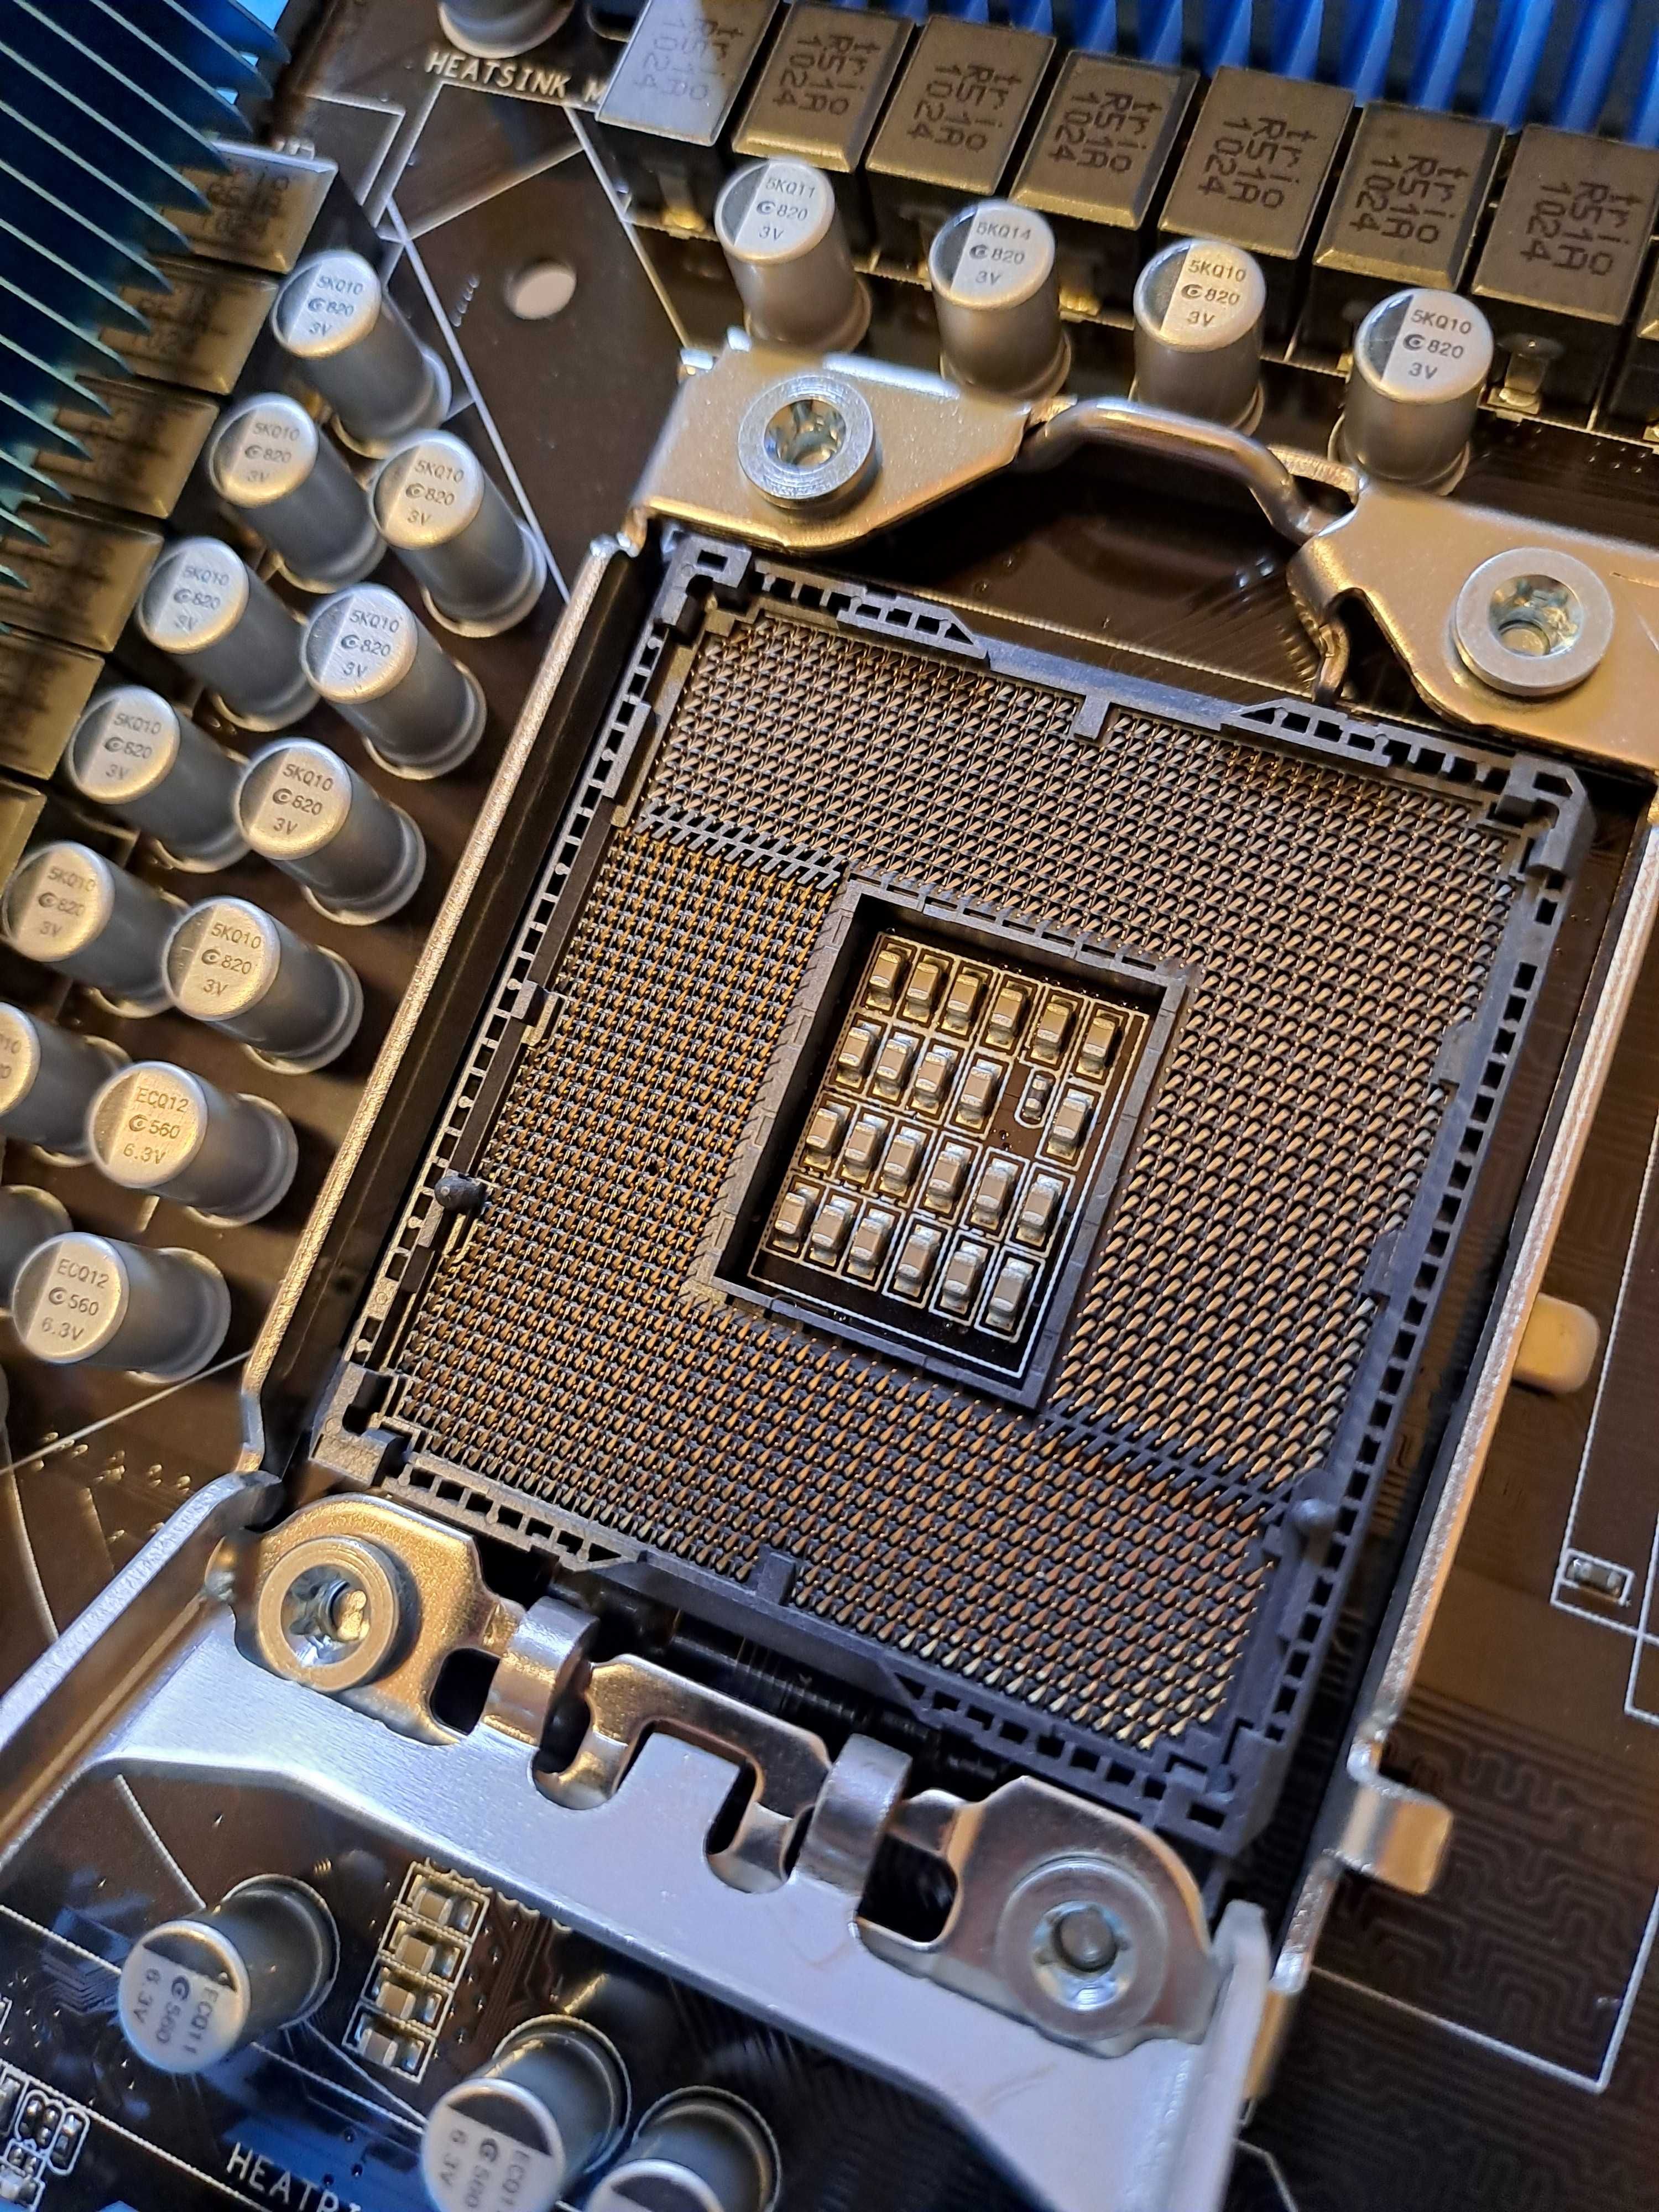 Bundle Intel Core i7-930 / Board Asus P6X58D-E LGA 1366